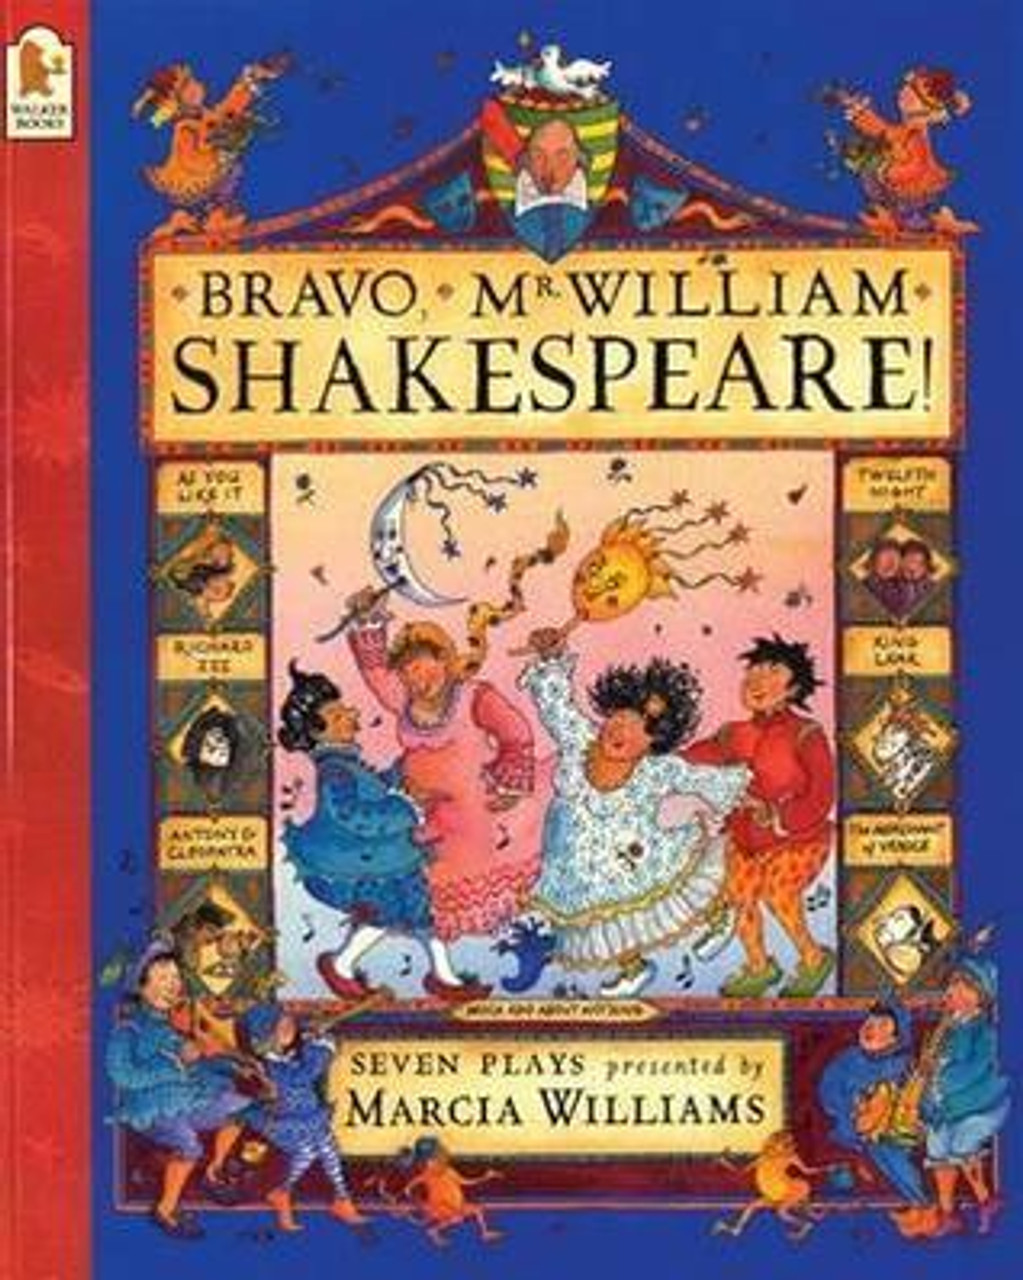 Marcia Williams / Bravo, Mr. William Shakespeare! (Children's Picture Book)